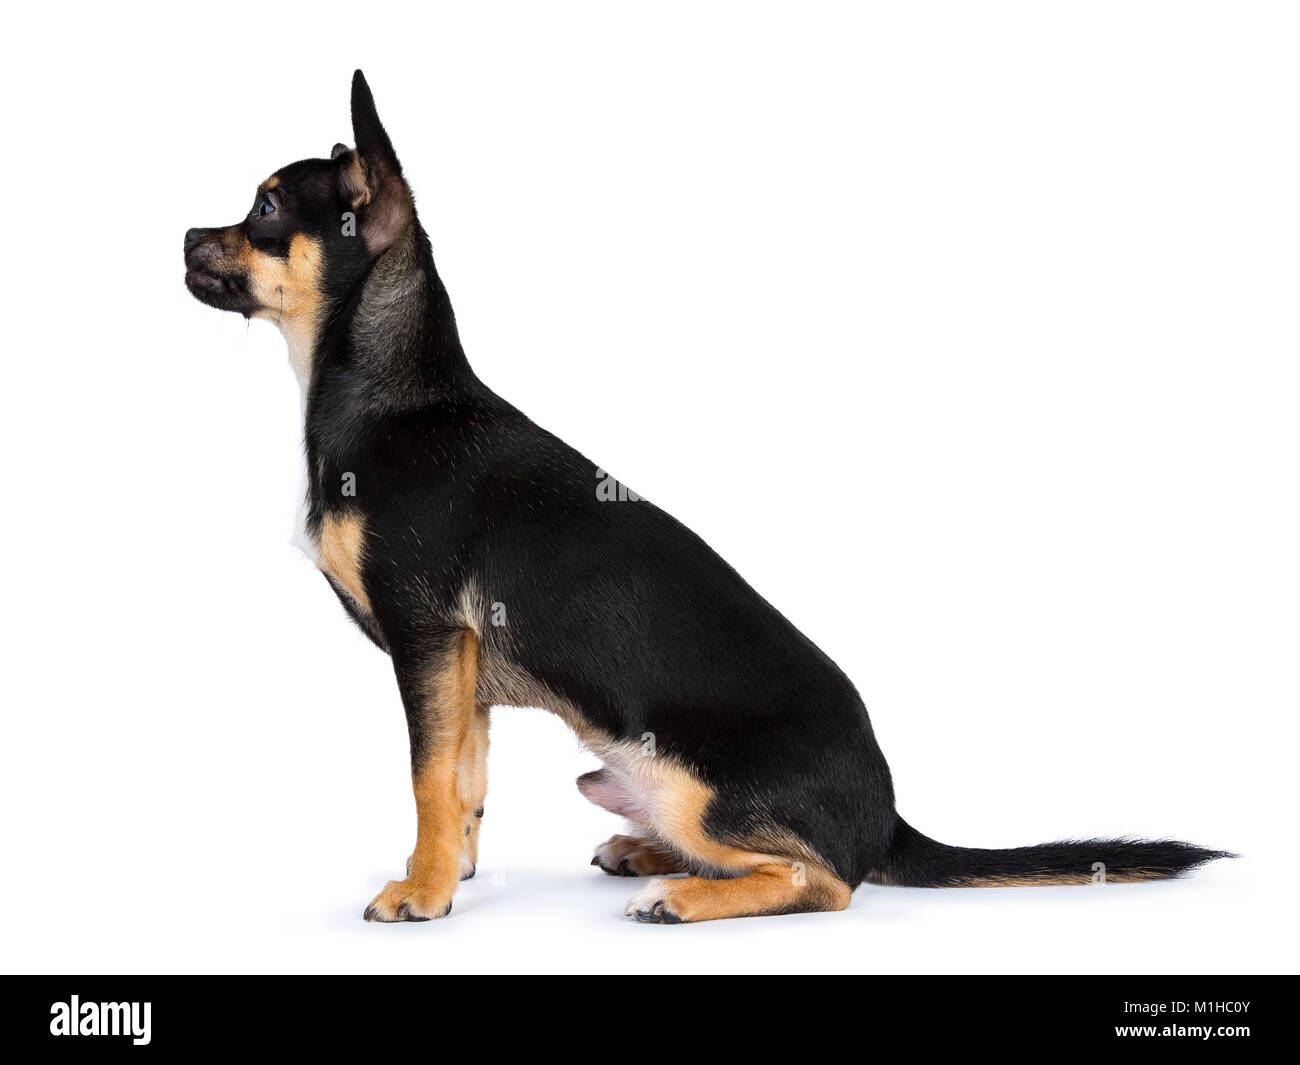 Nero chiwawa dog sitter lato laterale modi e guardando verso sinistra isolati su sfondo bianco Foto Stock